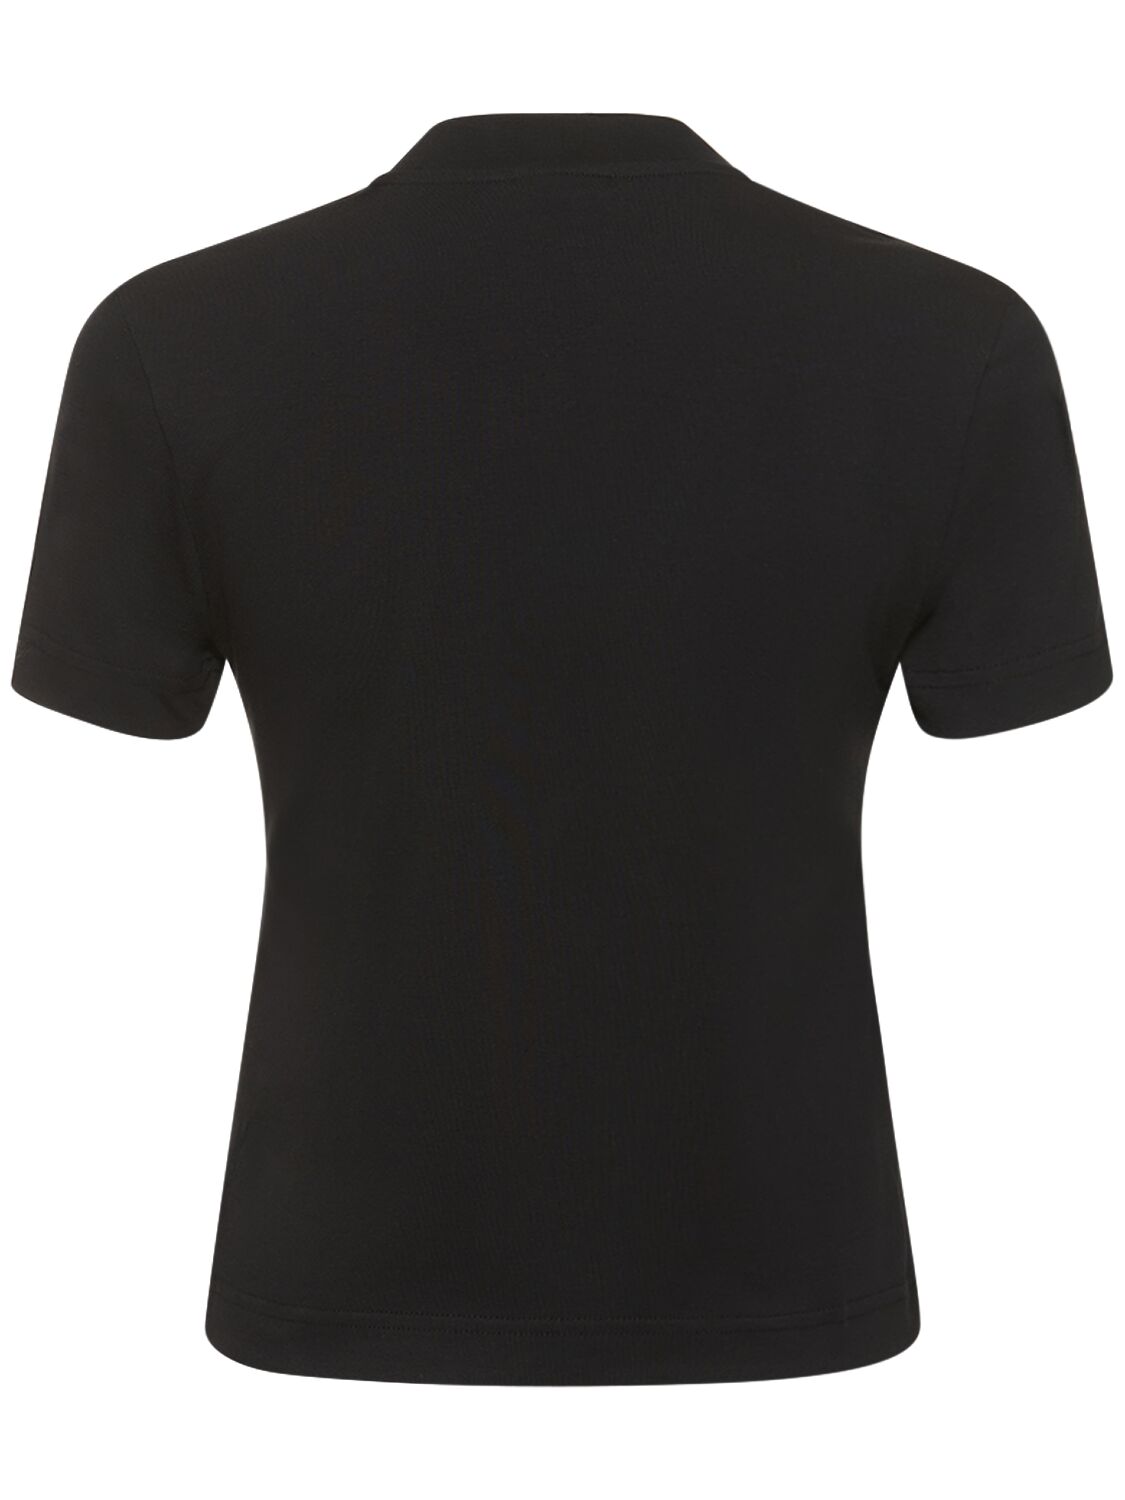 Shop Jacquemus Le T-shirt Gros Grain Cotton T-shirt In Black